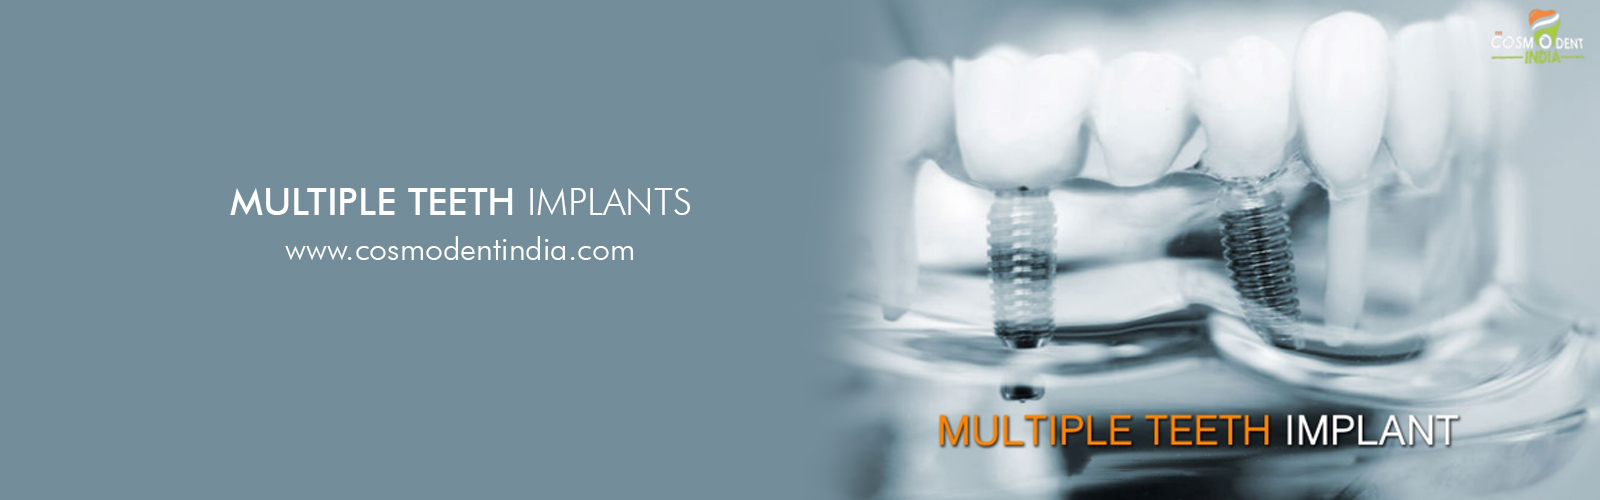 multiple-teeth-dental-implant-india